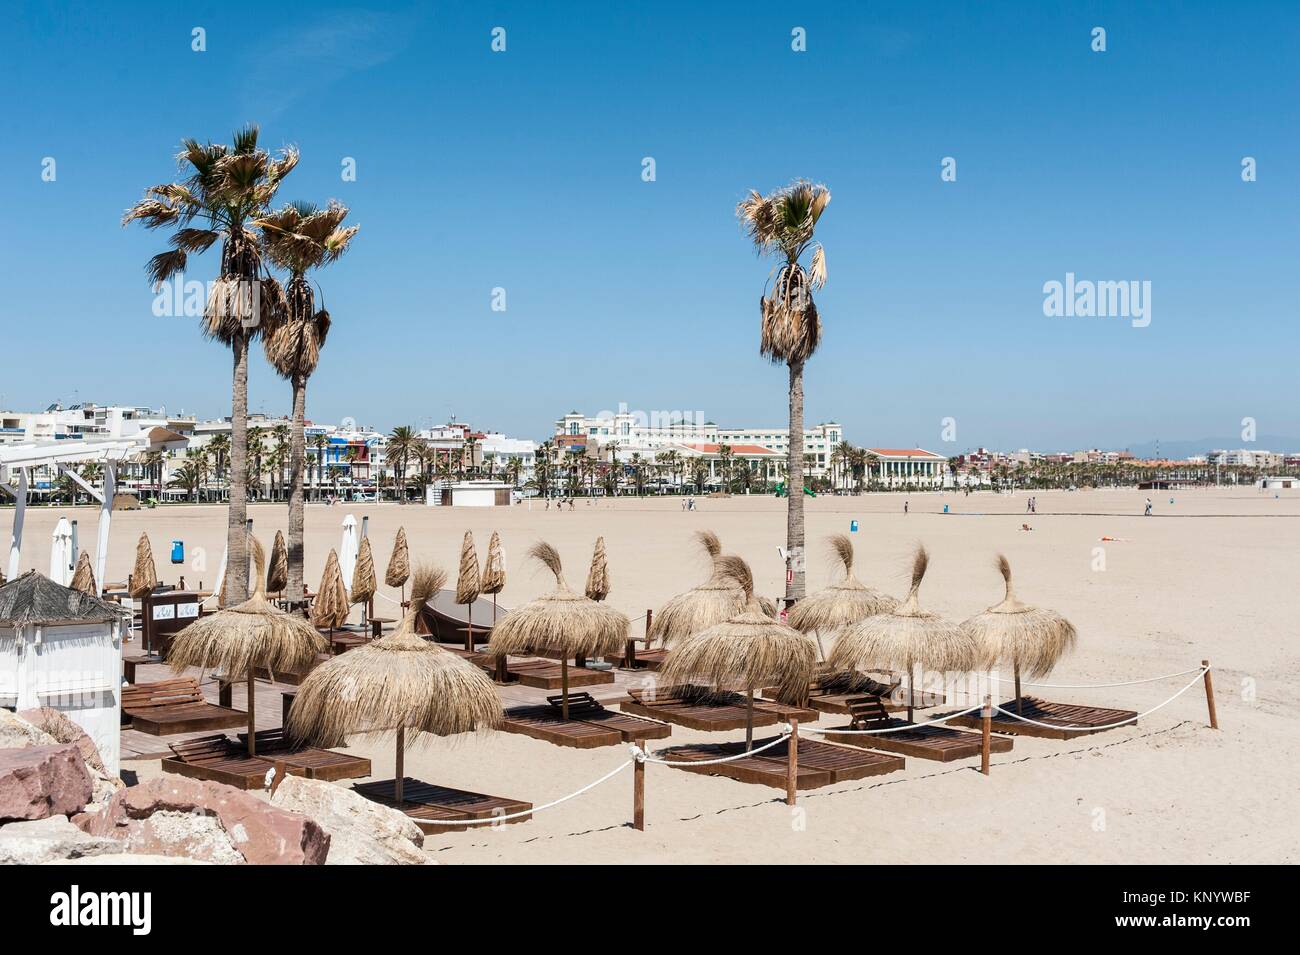 Las arenas beach valencia fotografías e imágenes de alta resolución - Alamy